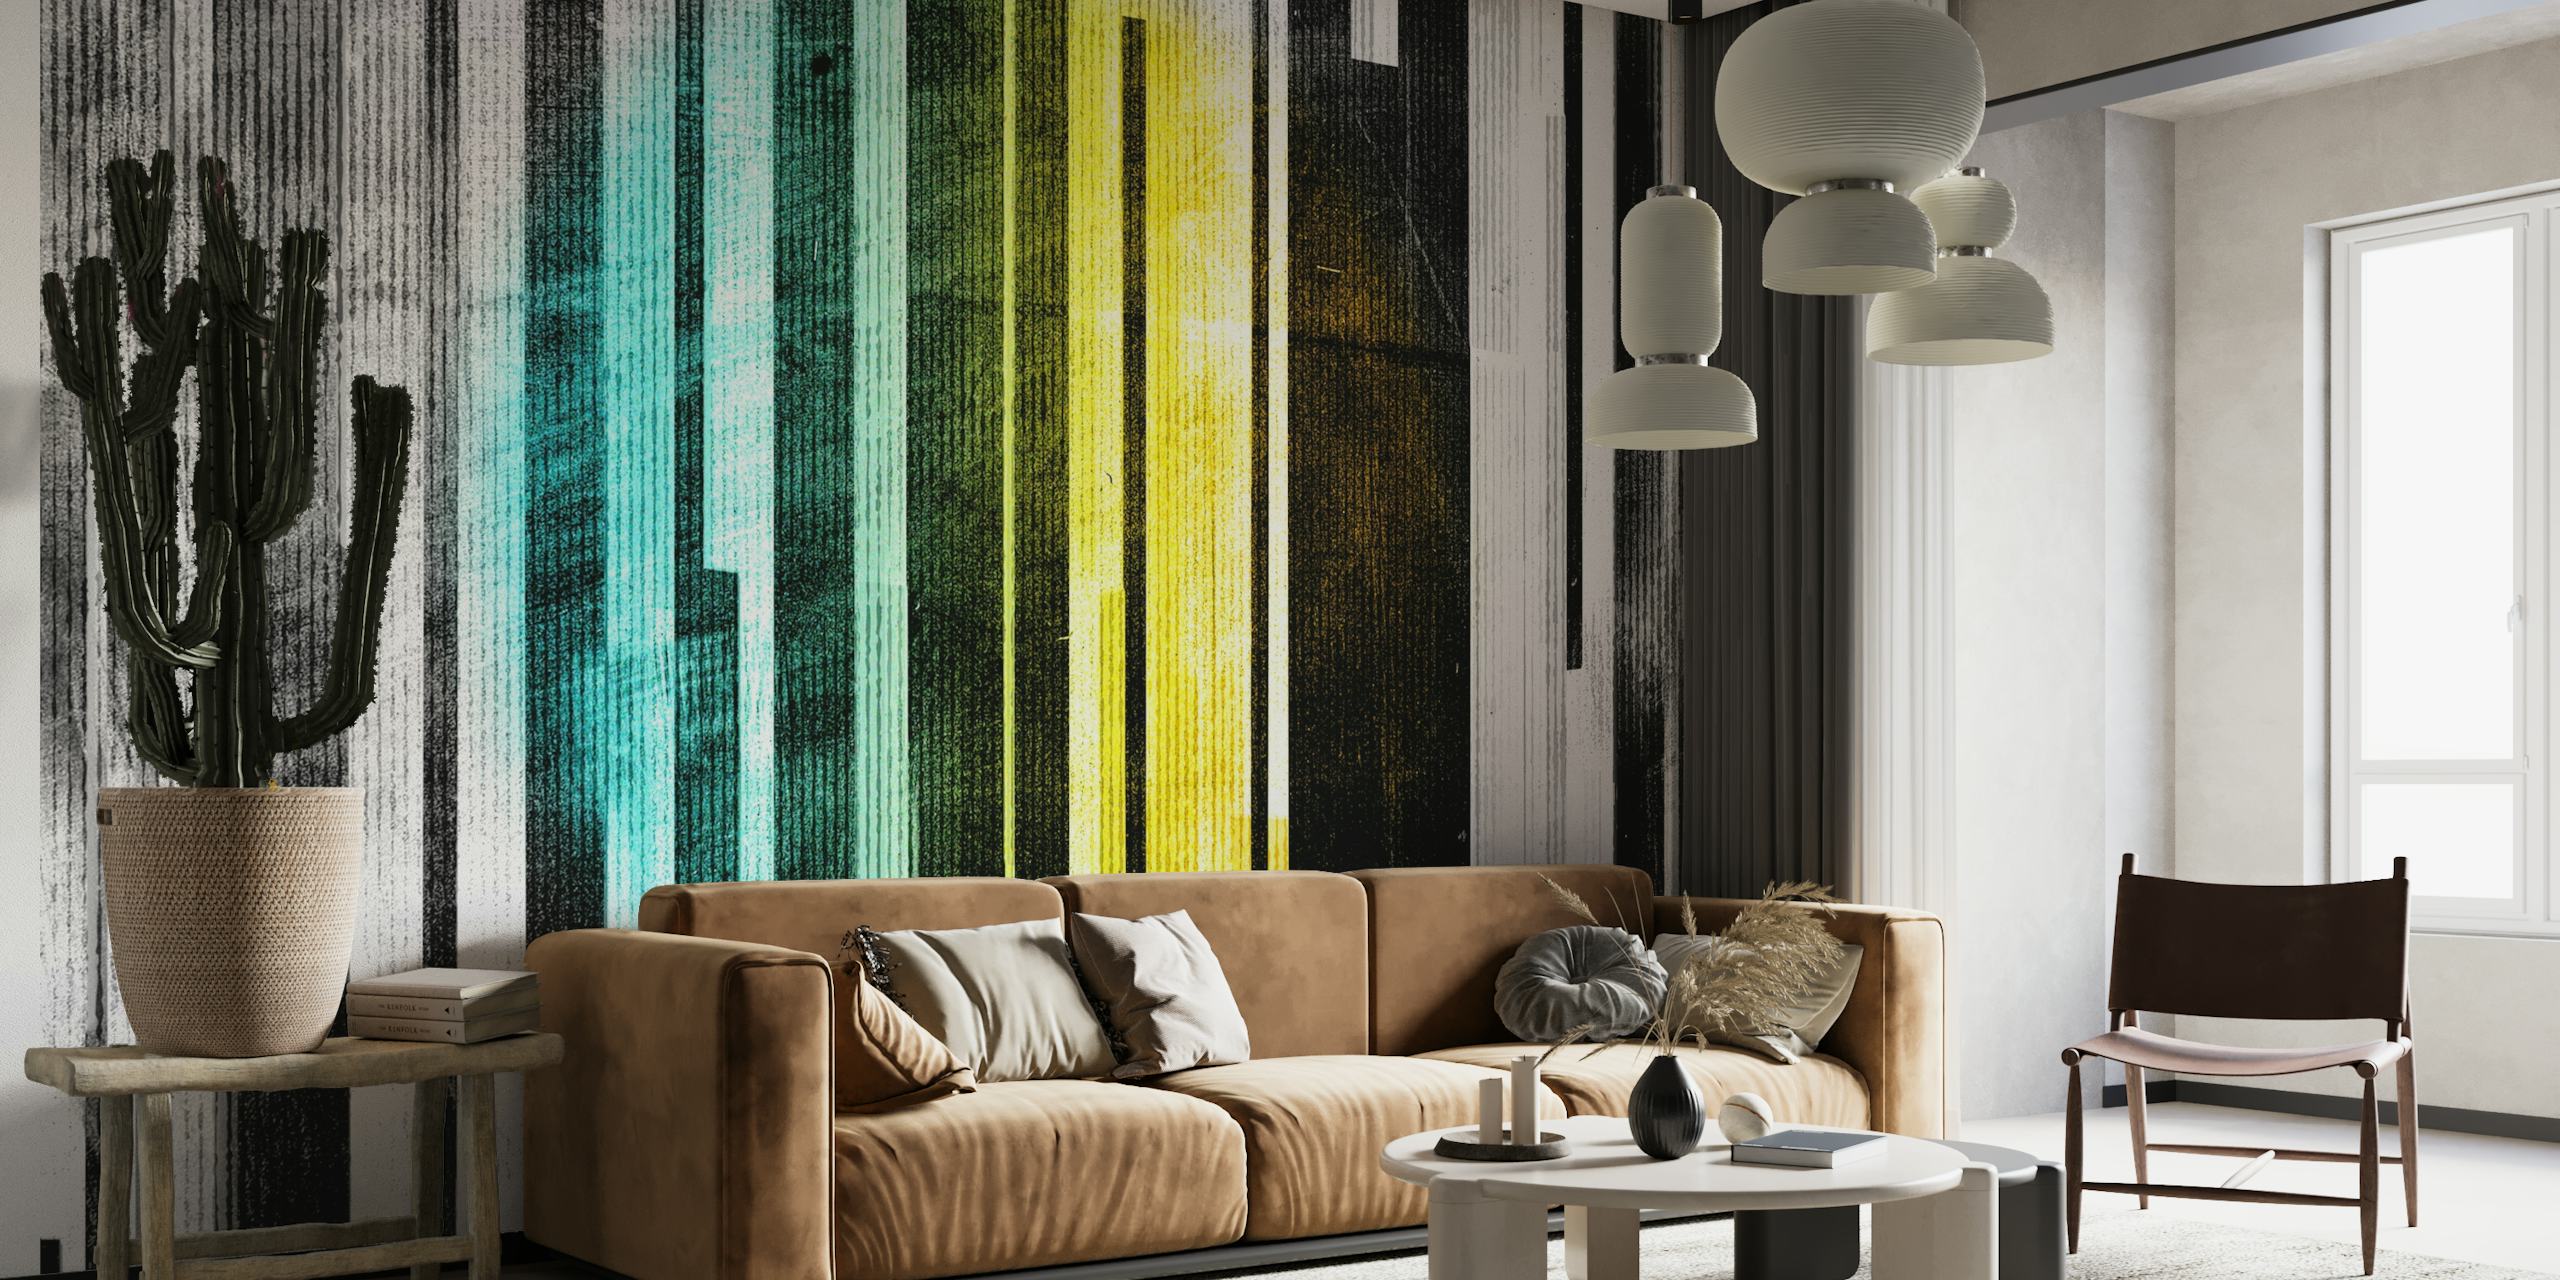 Abstrakti seinämaalaus pystysuorilla viivoilla mustana, valkoisena, akvamariinina ja keltaisena